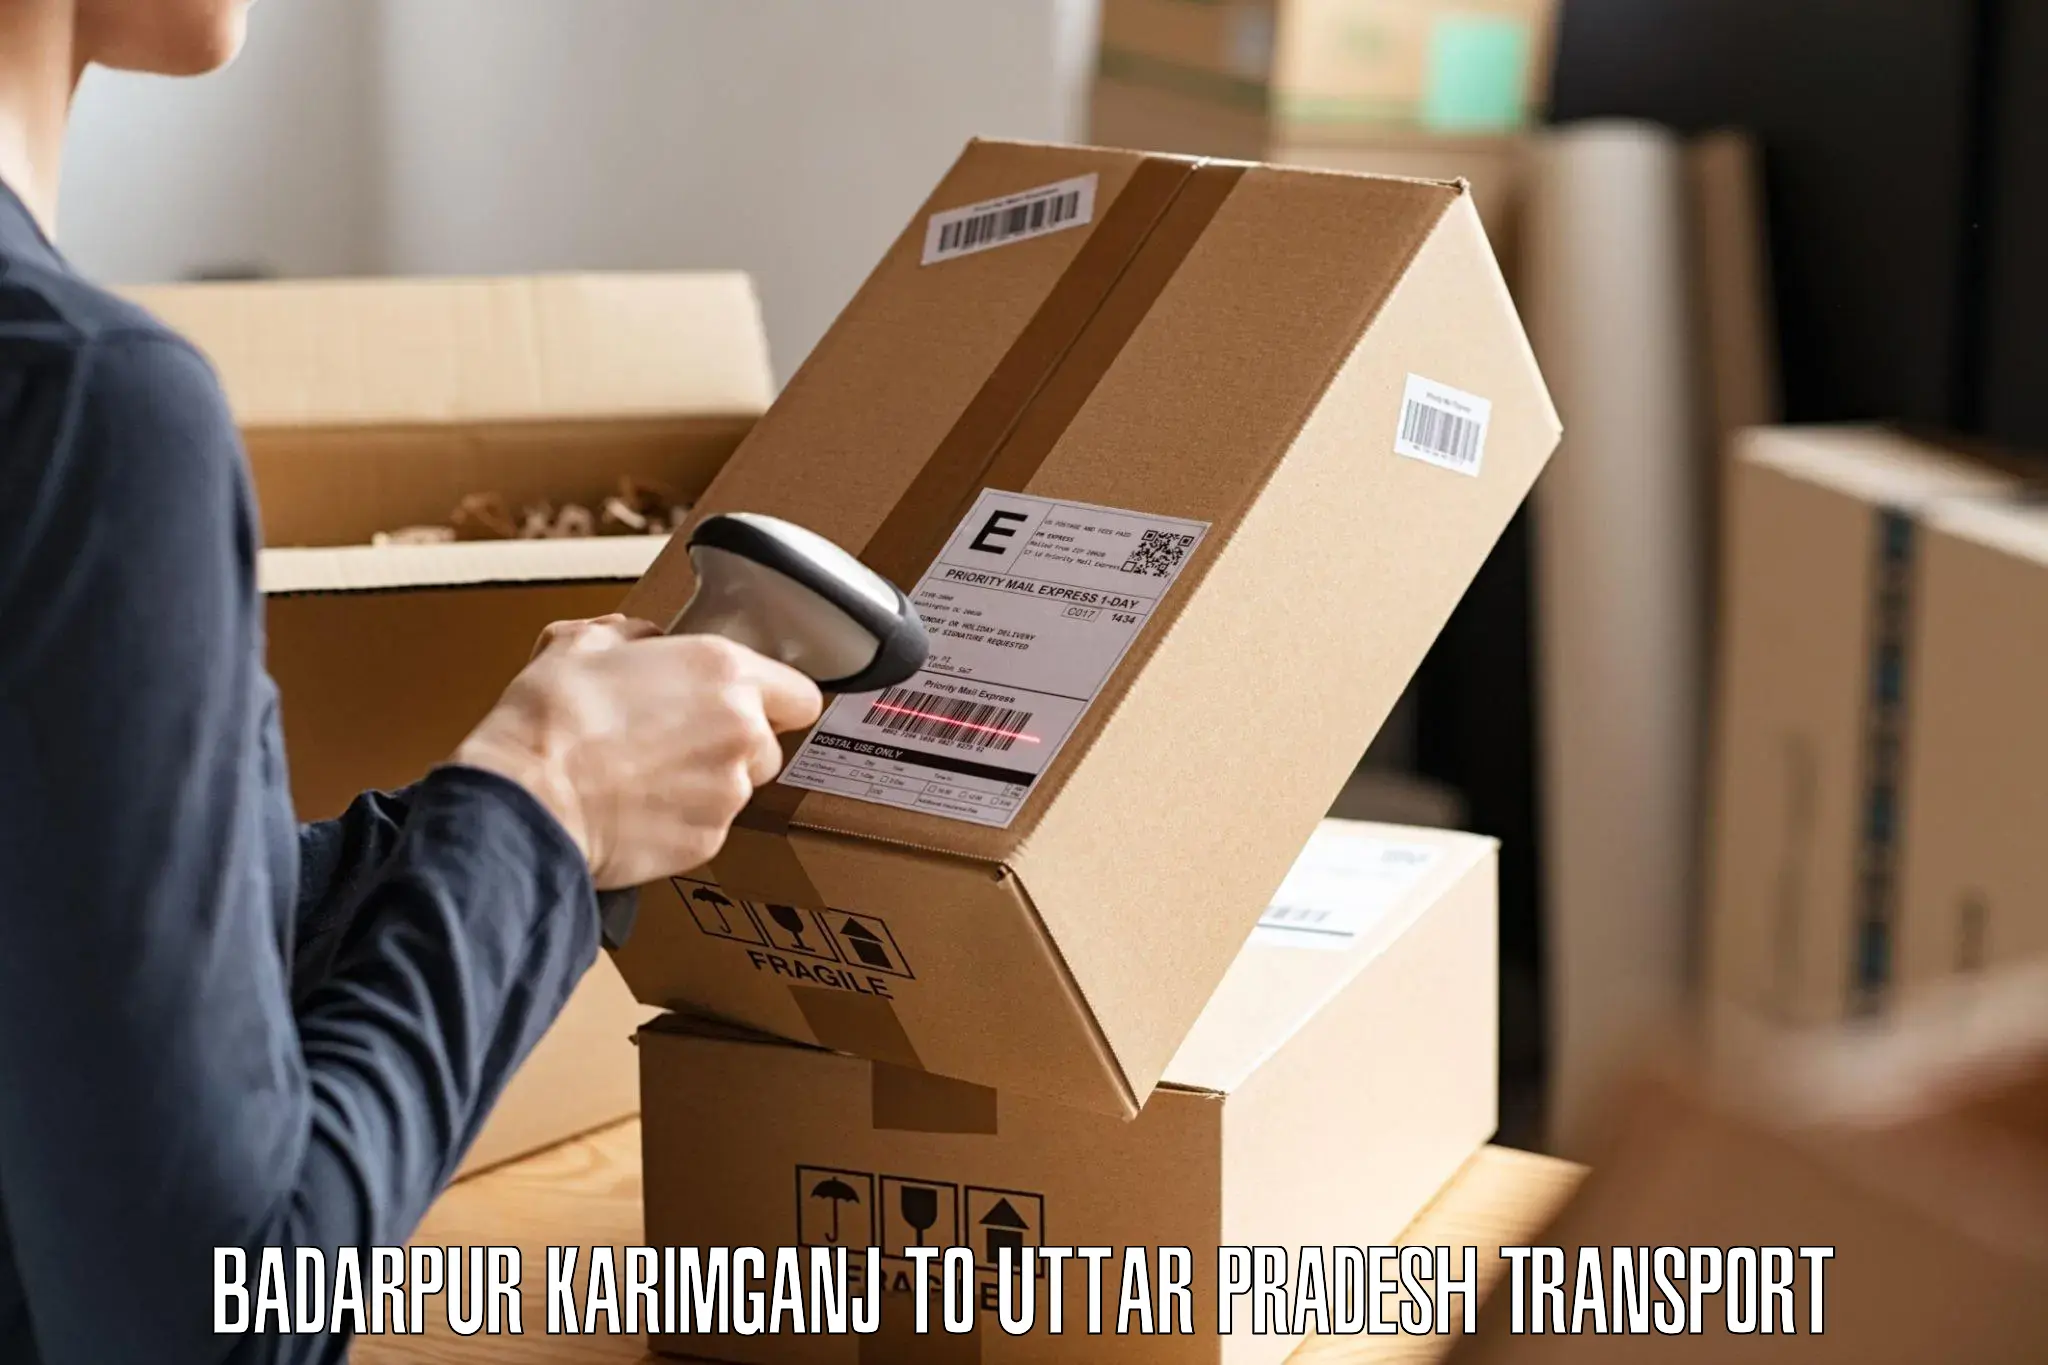 Furniture transport service Badarpur Karimganj to Pachperwa